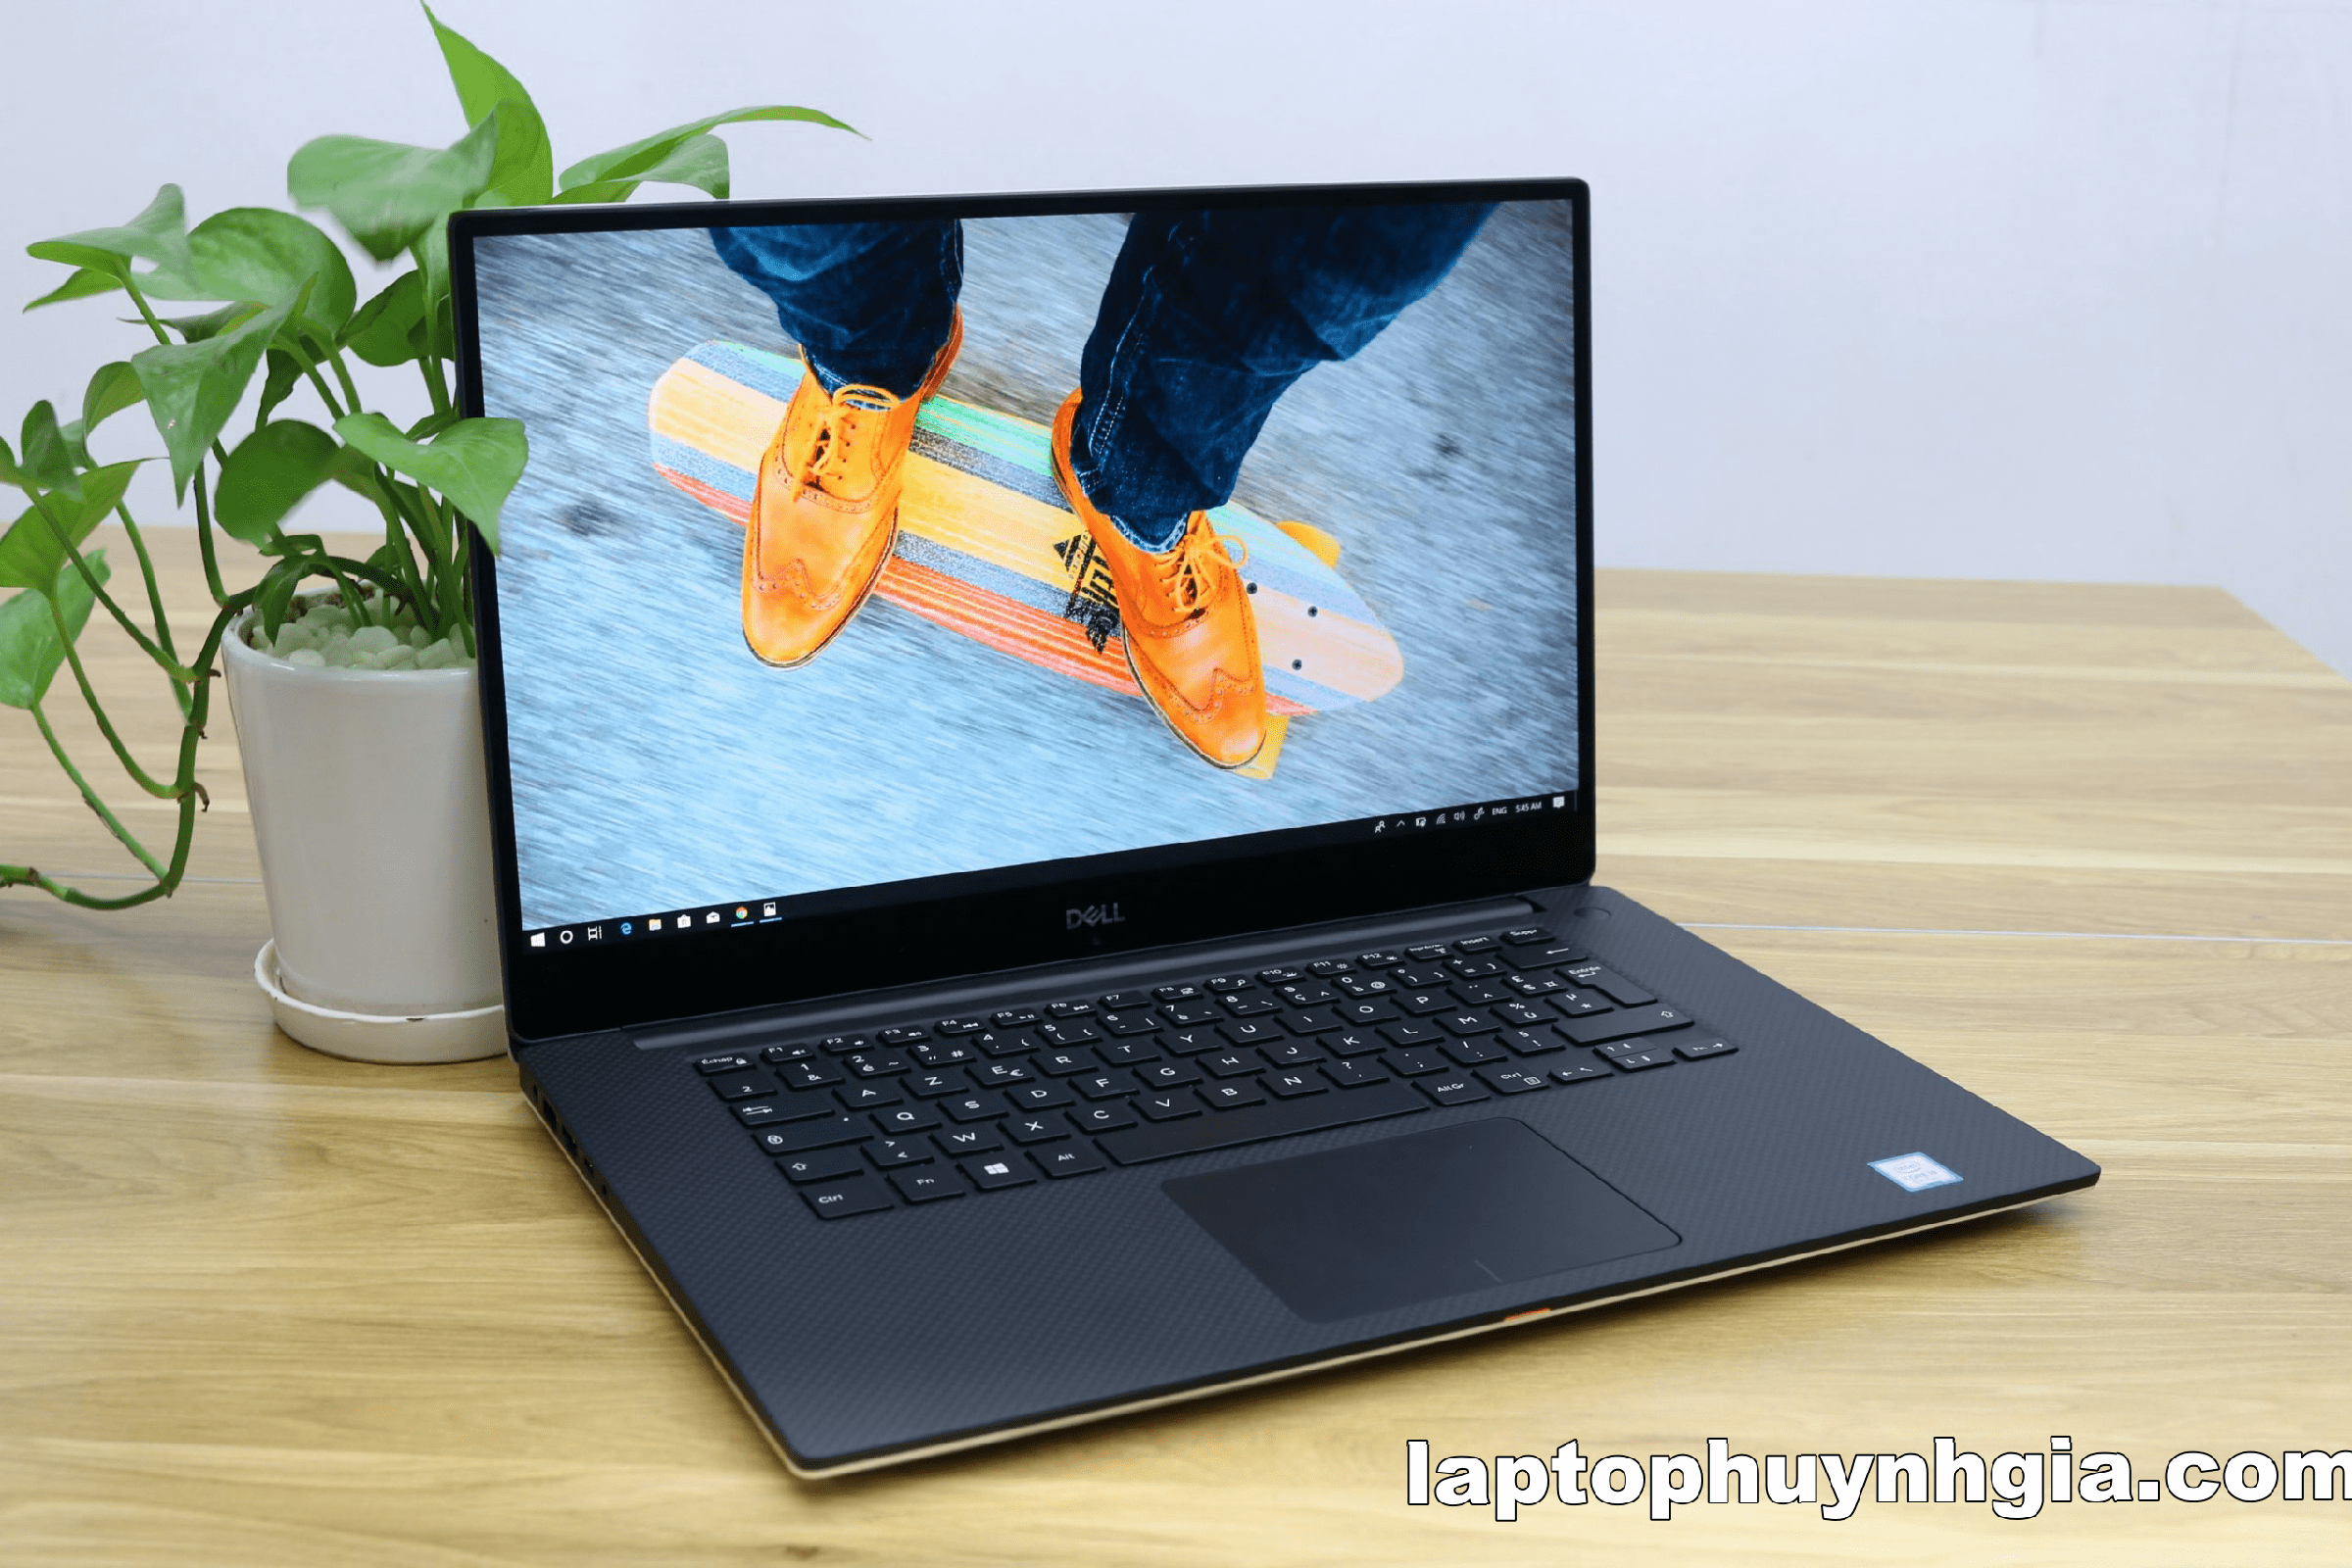 Laptop Cũ Bình Dương - laptop dell xps 9570 laptophuynhgia